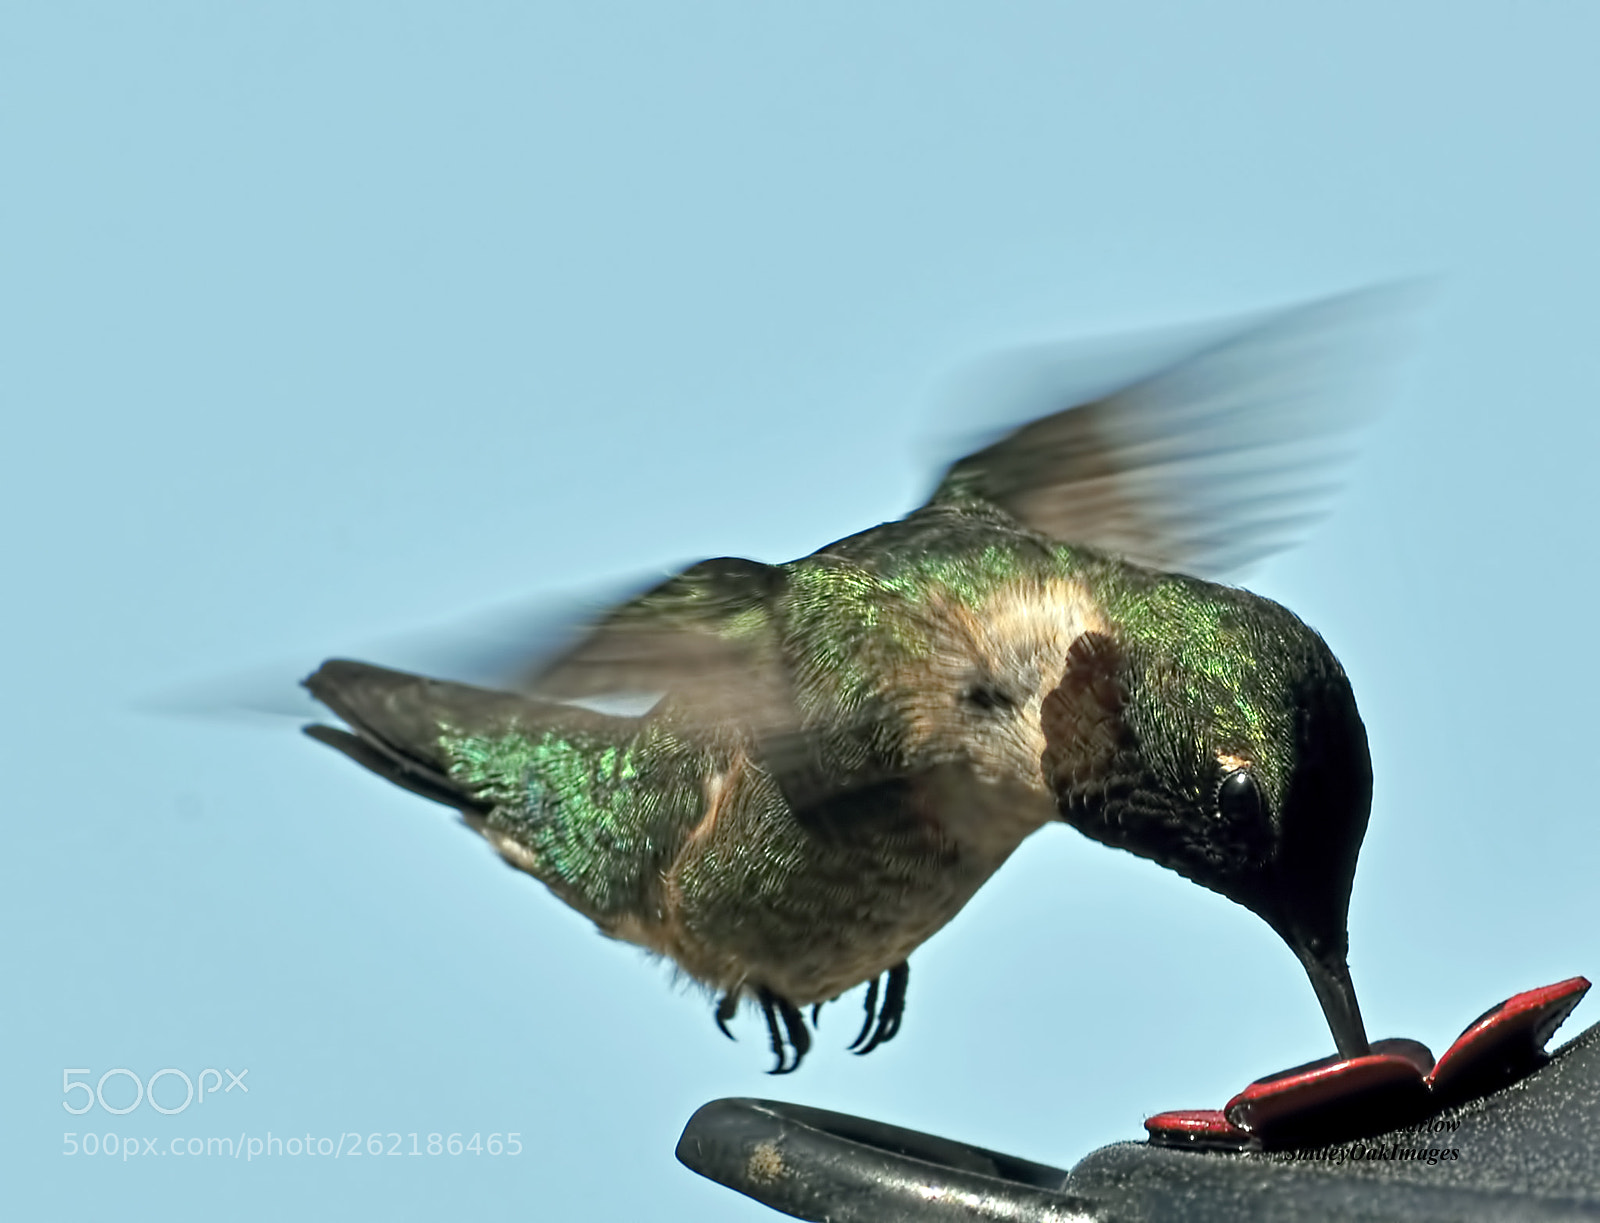 Nikon D5000 sample photo. Hummingbird photography